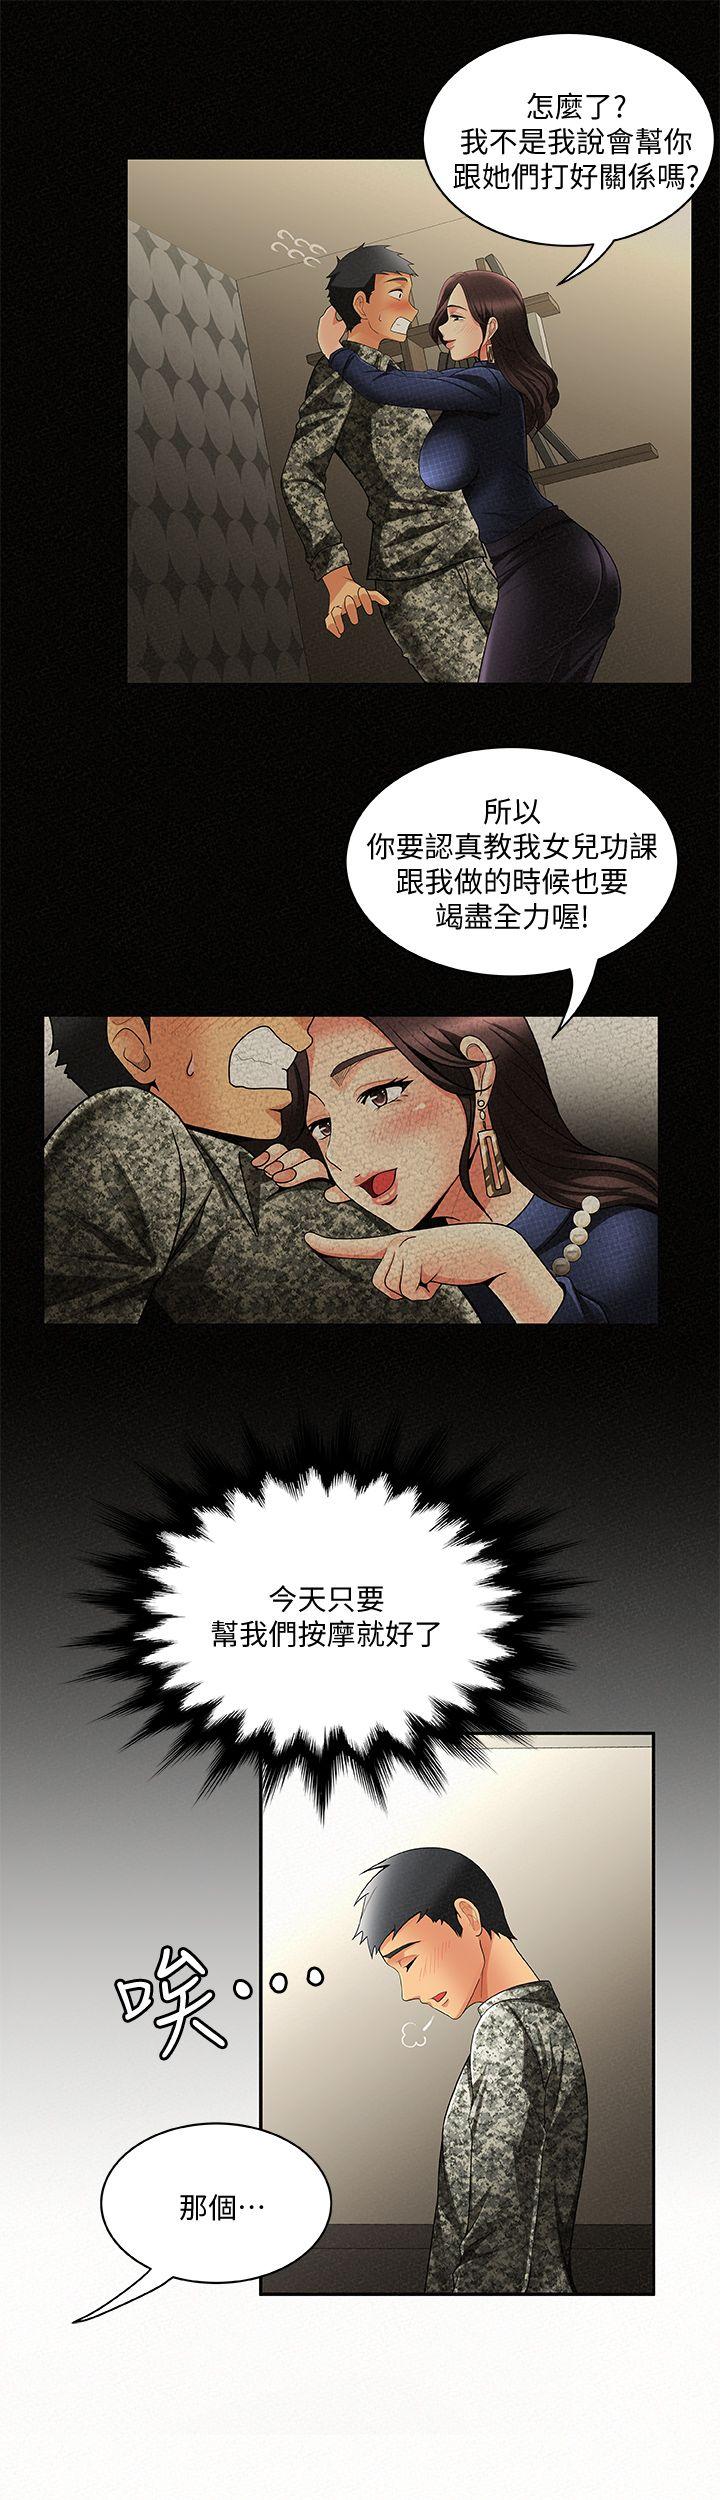 韩国污漫画 報告夫人 第3话-想不想嚐嚐其他有夫之妇? 22